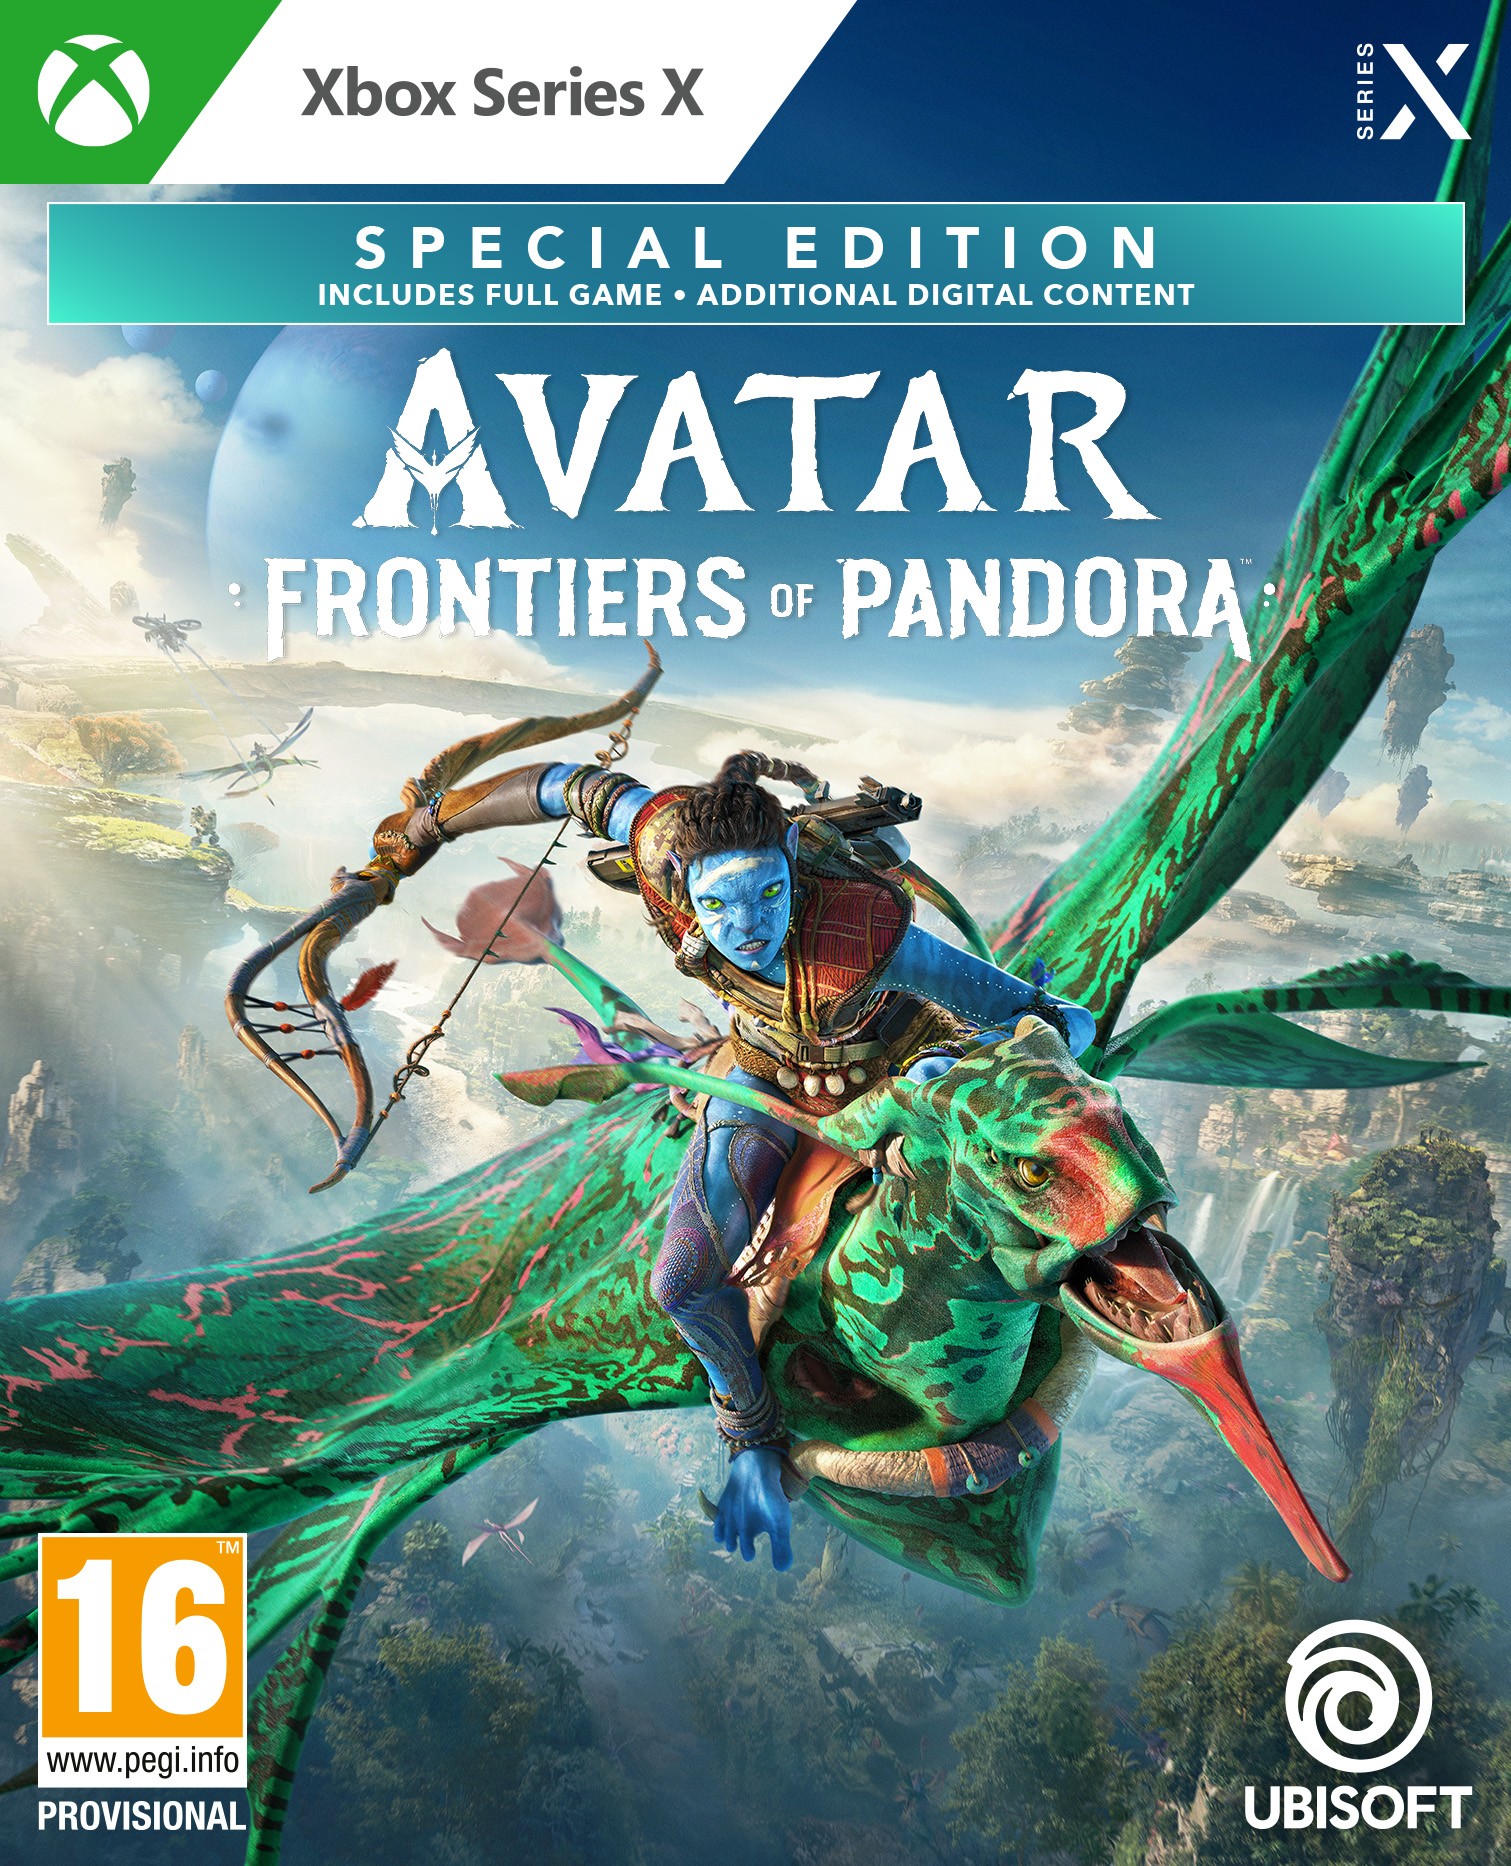 Avatar: Frontiers of Pandora Special Edition + Preorder Bonus